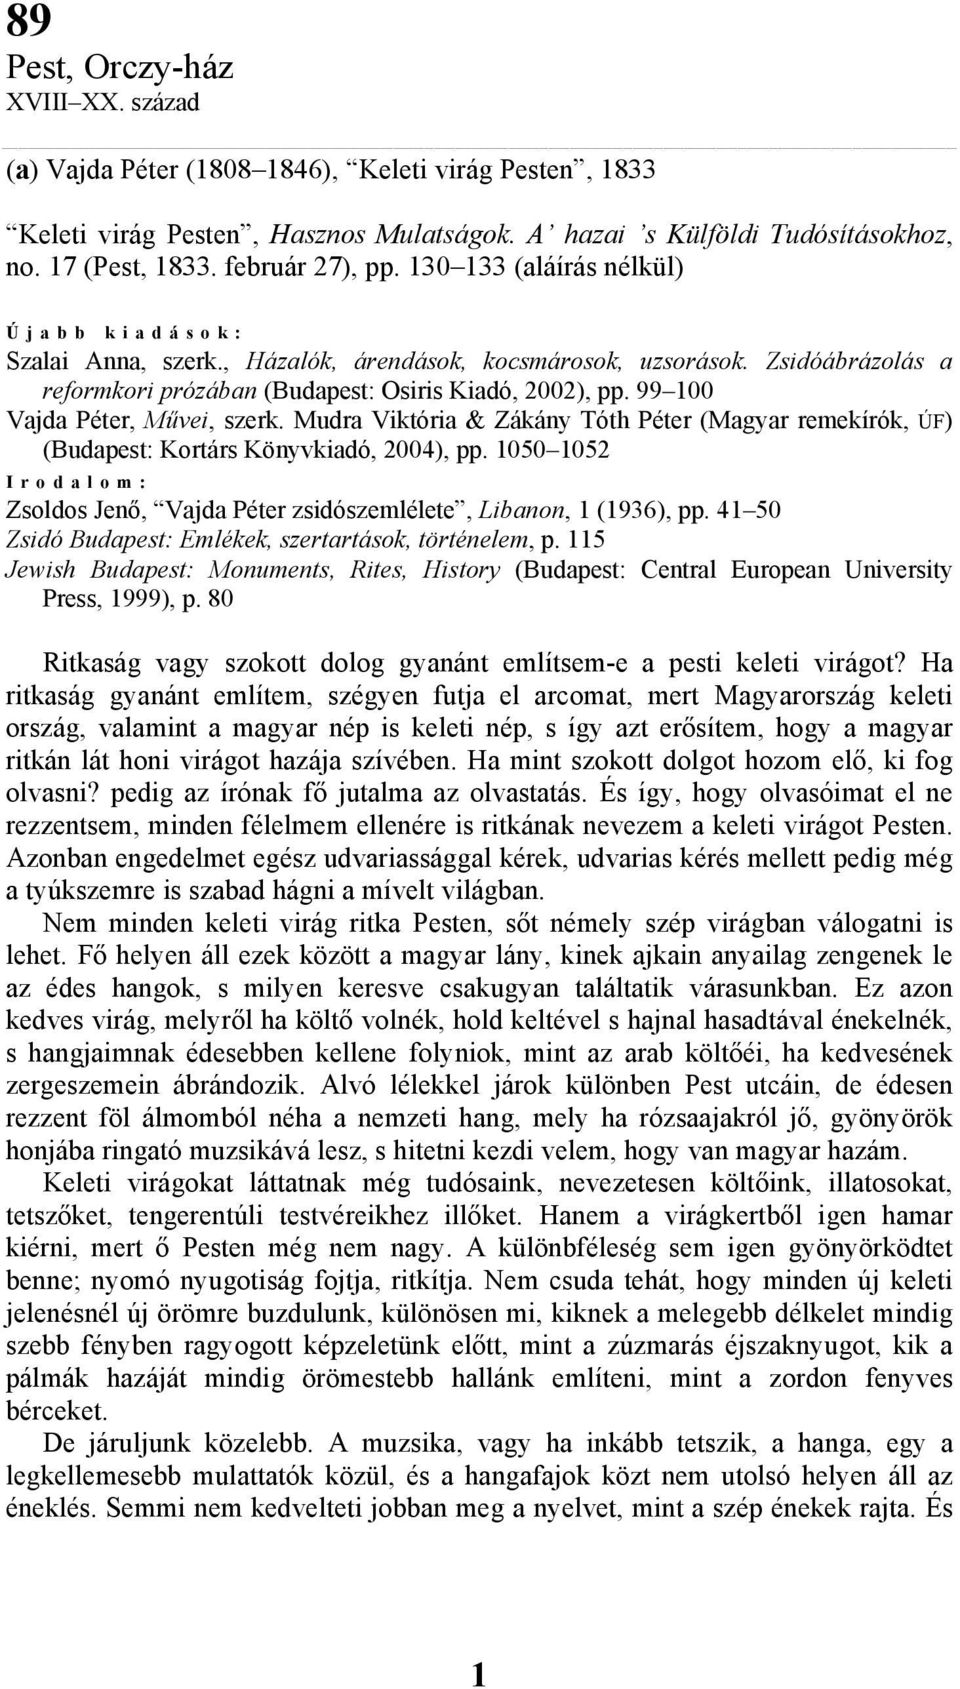 99 100 Vajda Péter, Művei, szerk. Mudra Viktória & Zákány Tóth Péter (Magyar remekírók, ÚF) (Budapest: Kortárs Könyvkiadó, 2004), pp.